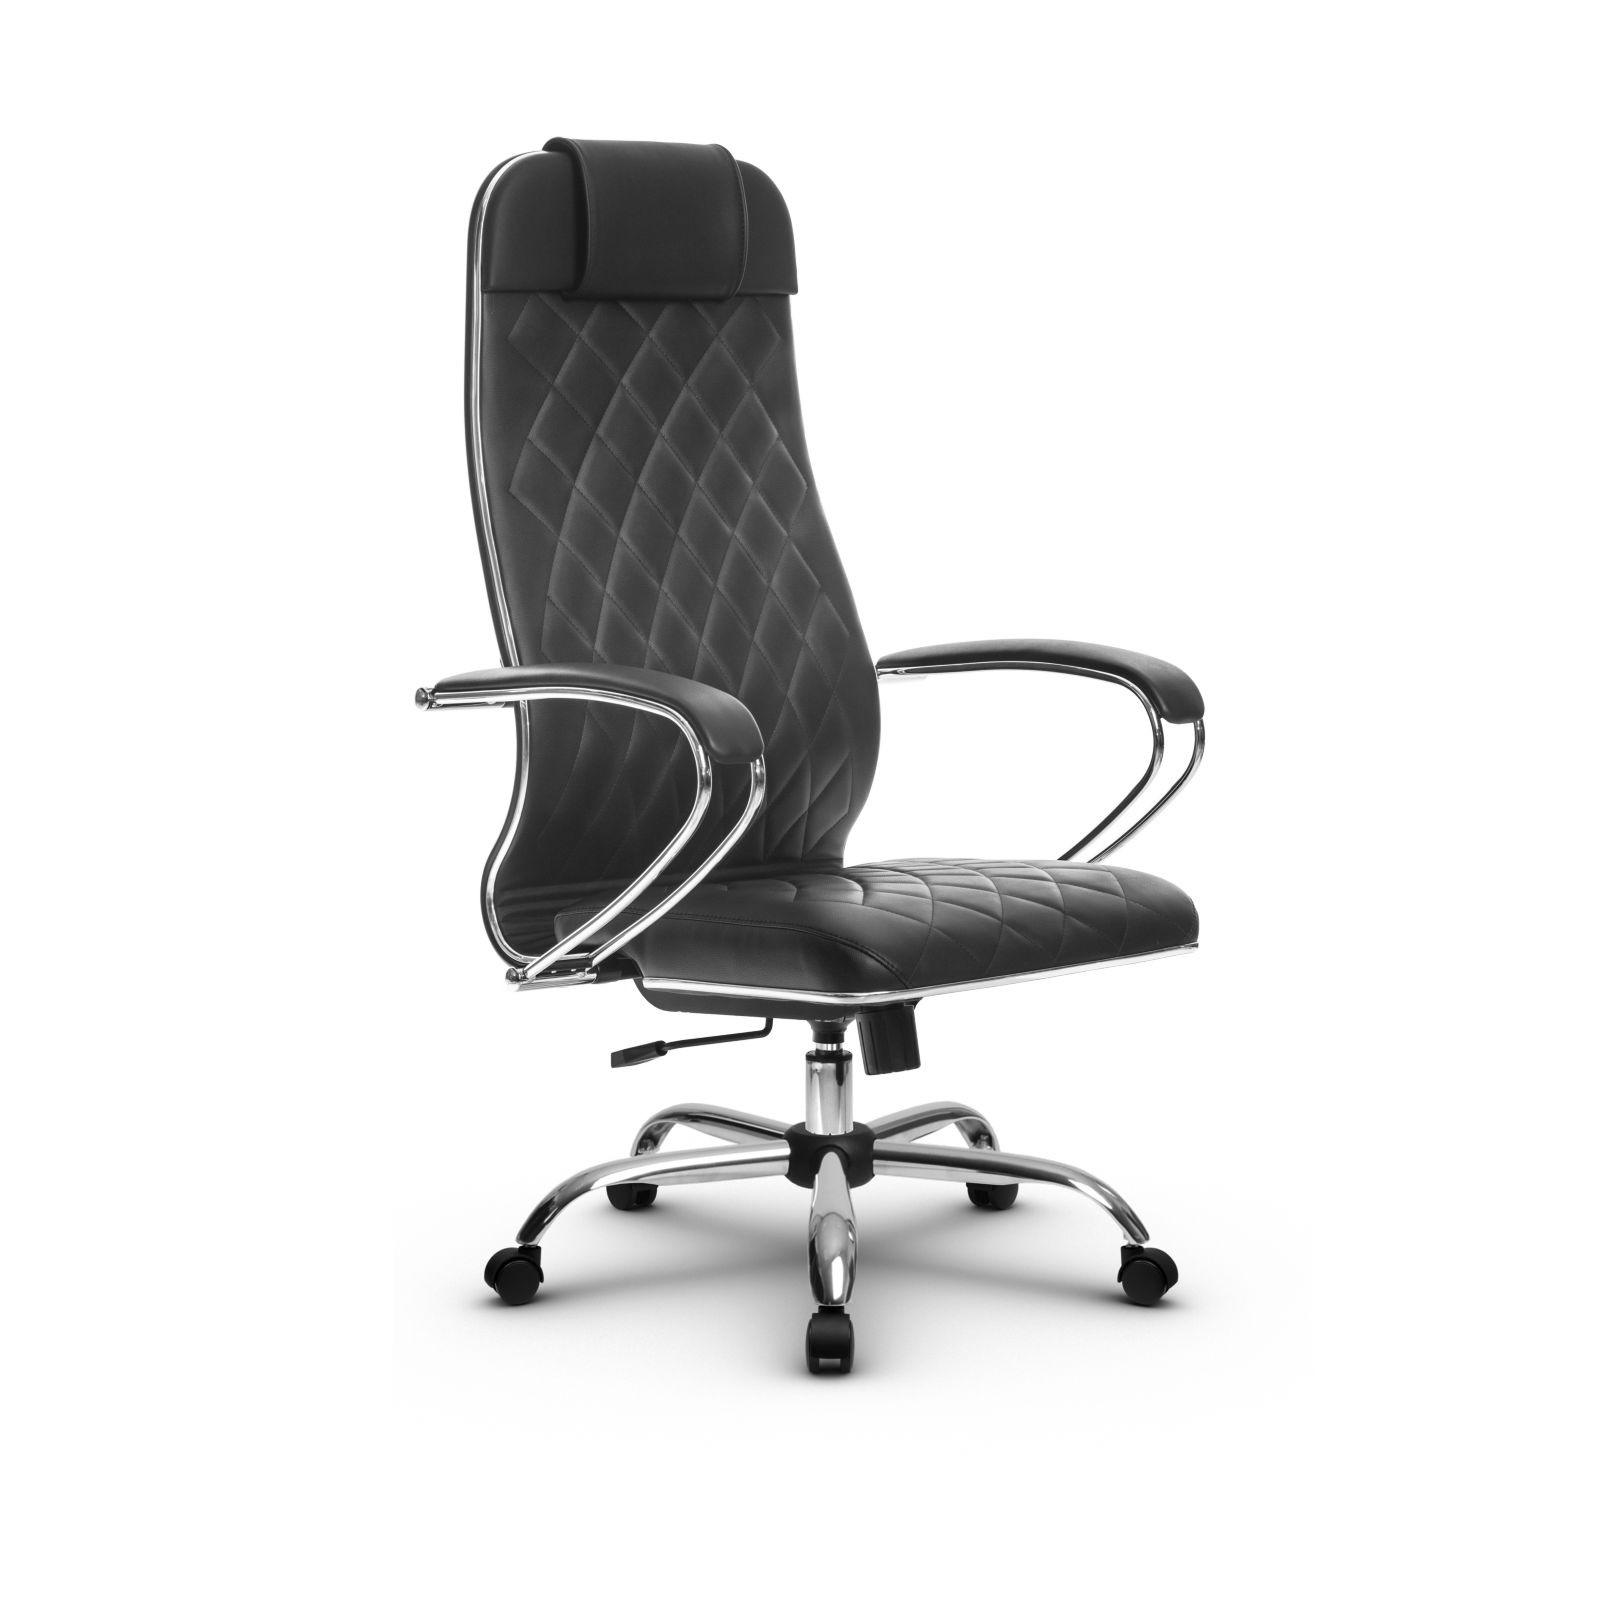 МЕТТА L 1m 40М/K Ch кресло офисное (МТ) (кожа NL черный)